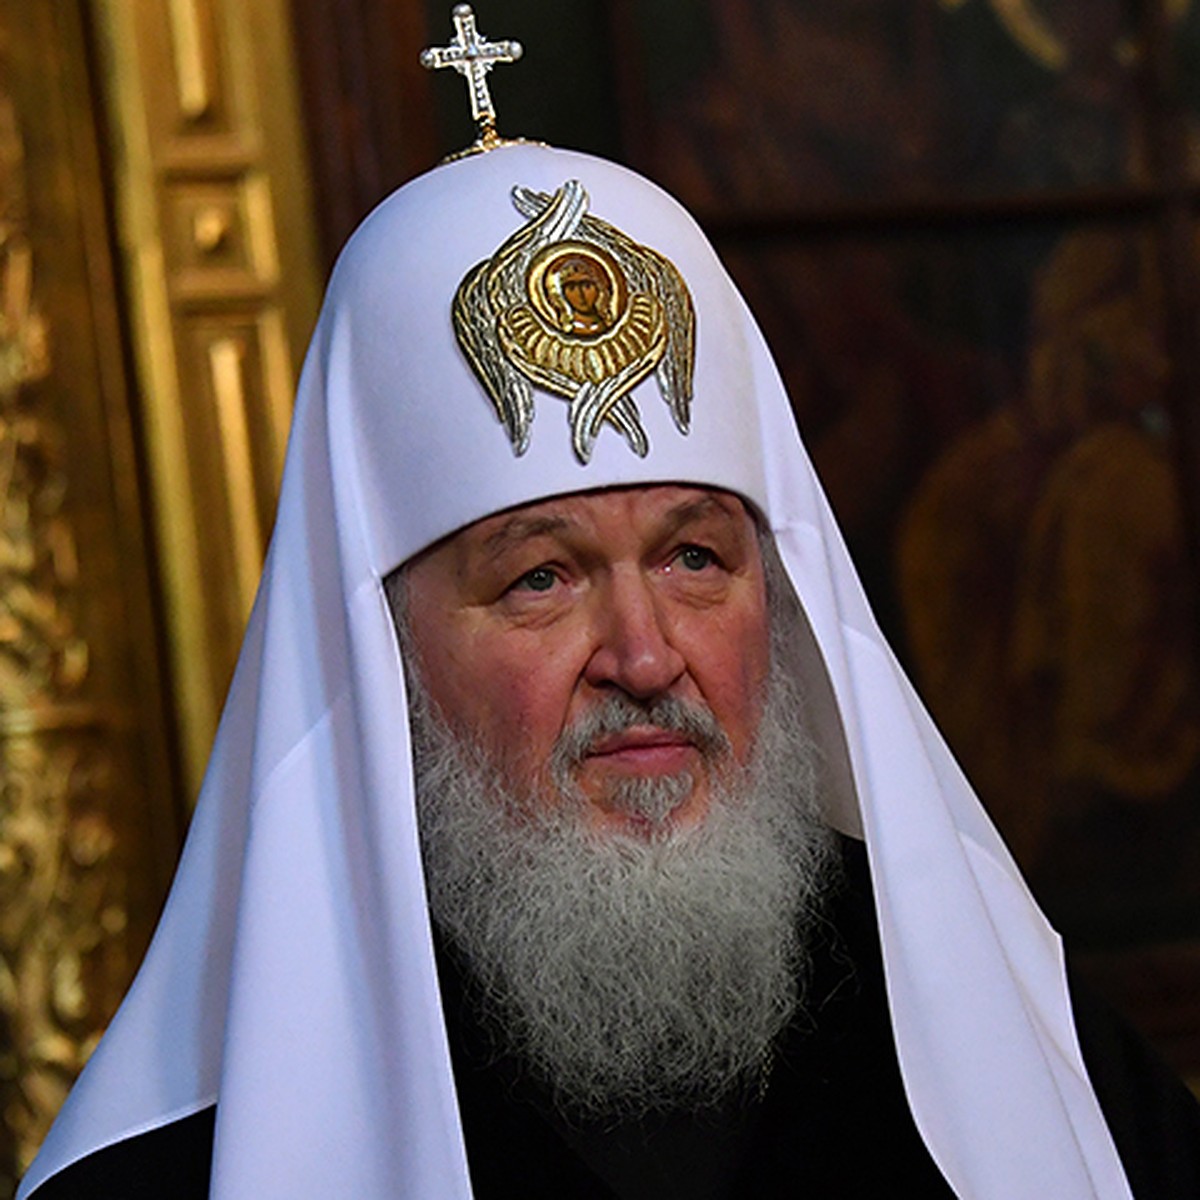 Патриарх Кирилл в молодости